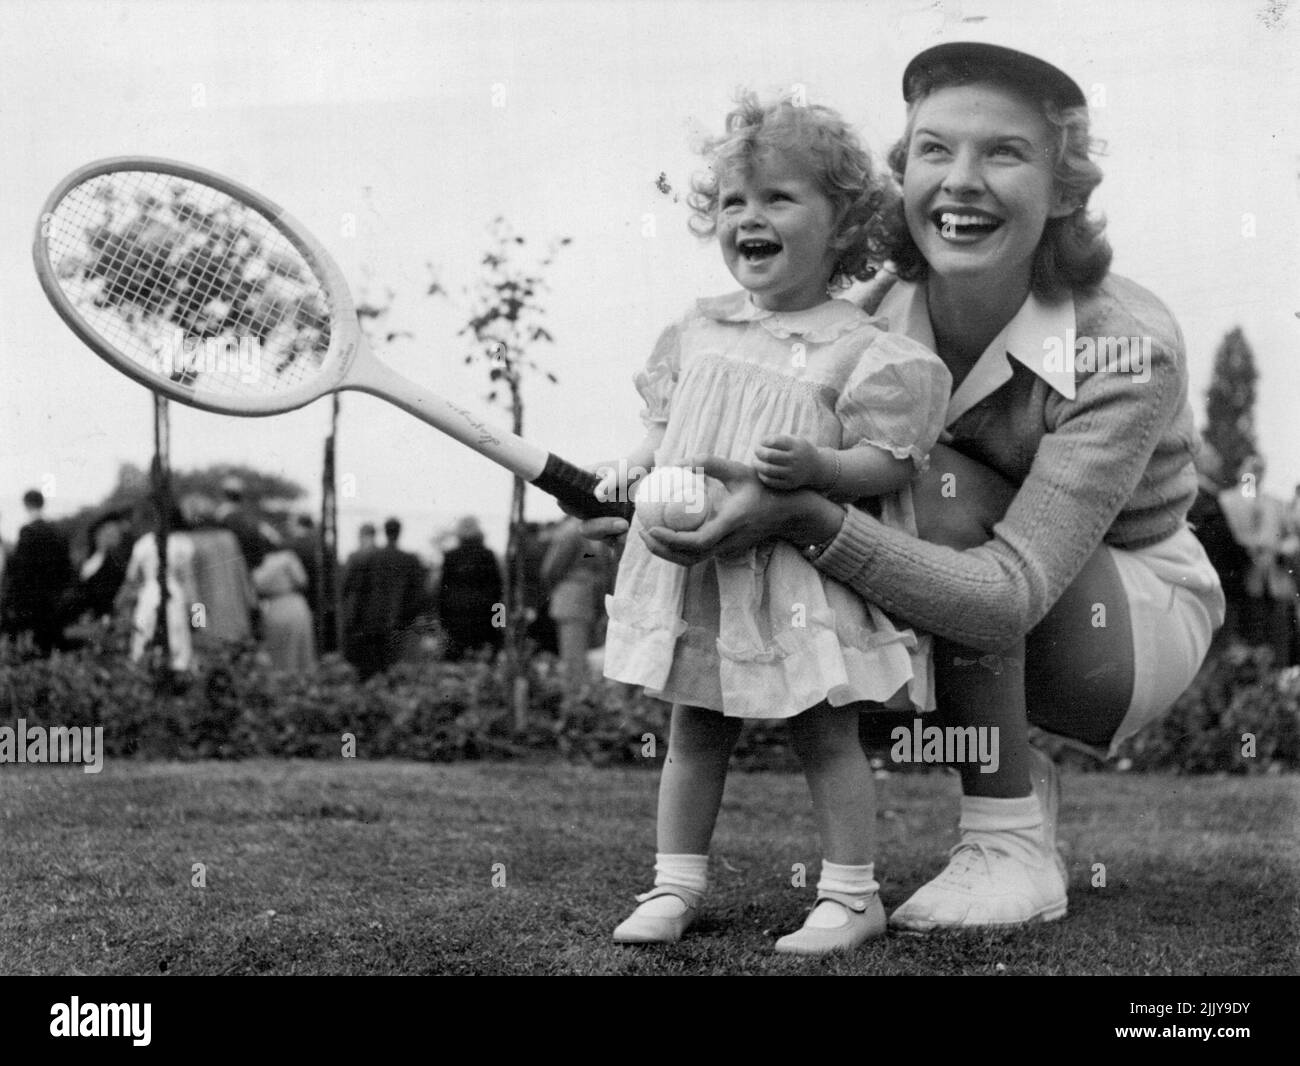 Joy montre son service - Auntie Joy obtient un conseil, sur la façon de servir un «as» ***** Son neice, Joy Panton, âgée de vingt mois, pendant une ***** Pour les joueurs du tournoi de Wimbledon qui se tiendra hier au Burlingham Club, Londres. Auntie Joy - Mme Mottram, épouse du joueur de la coupe Davis britannique Tony - était un simple gilet, une chemise unie et des shorts ordinaires pour les jeux de knockup qui ont été joués pendant la réception. 25 juin 1951. (Photo par Daily Mirror). Banque D'Images